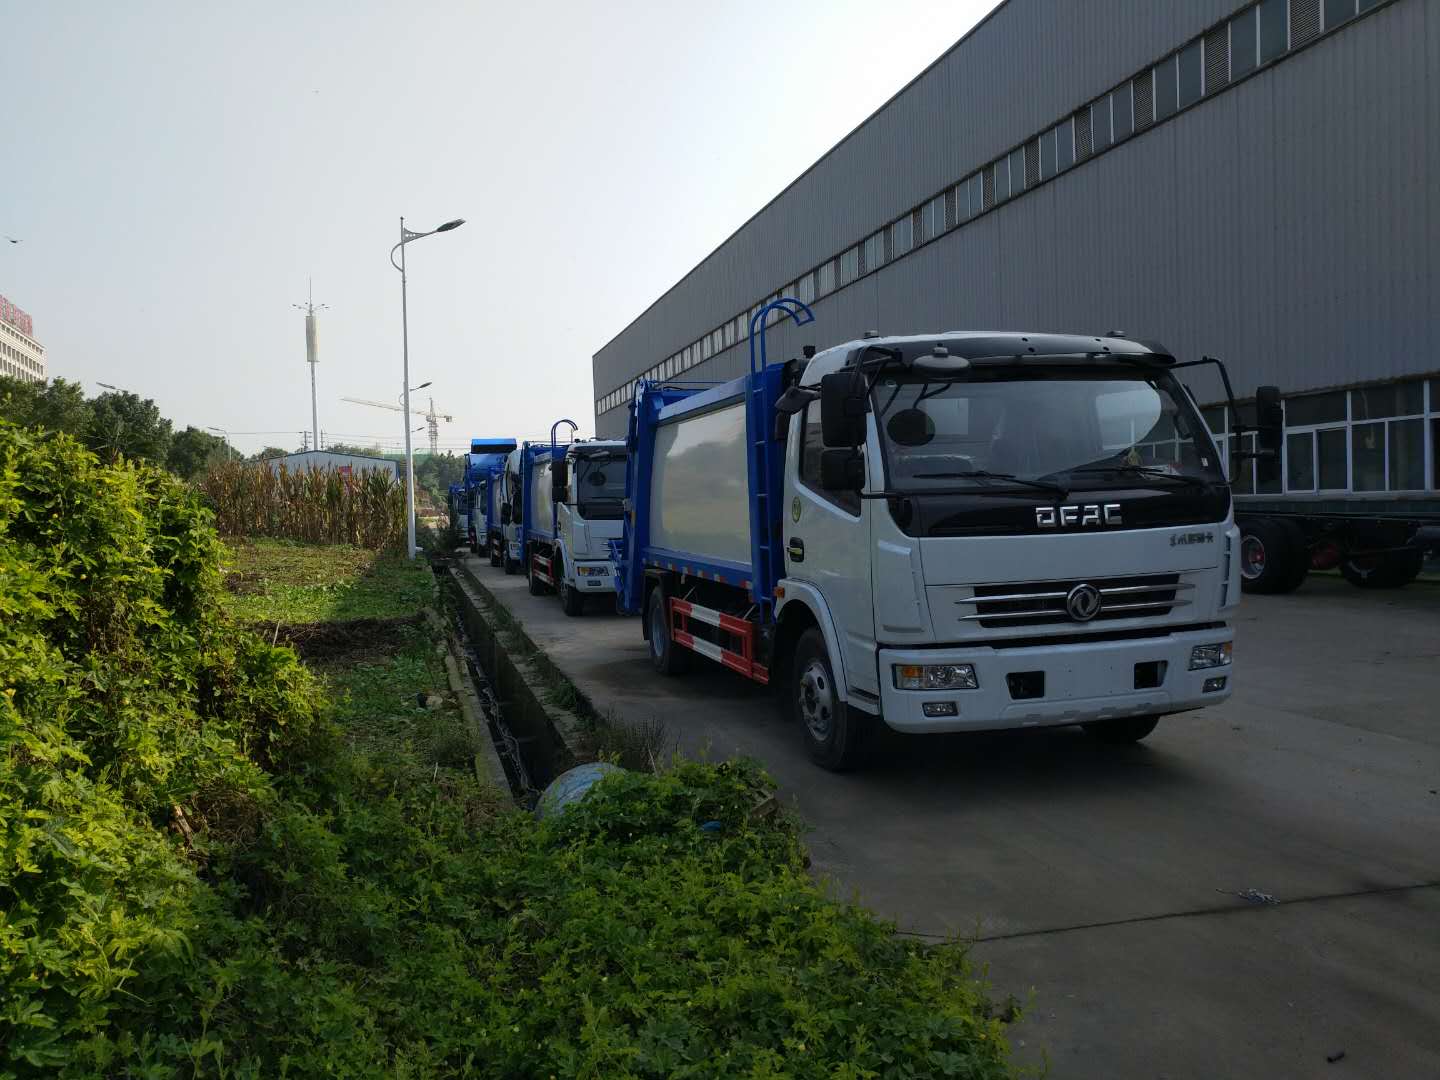 庆阳地区8吨垃圾压缩车出售_东风桶装垃圾运输车